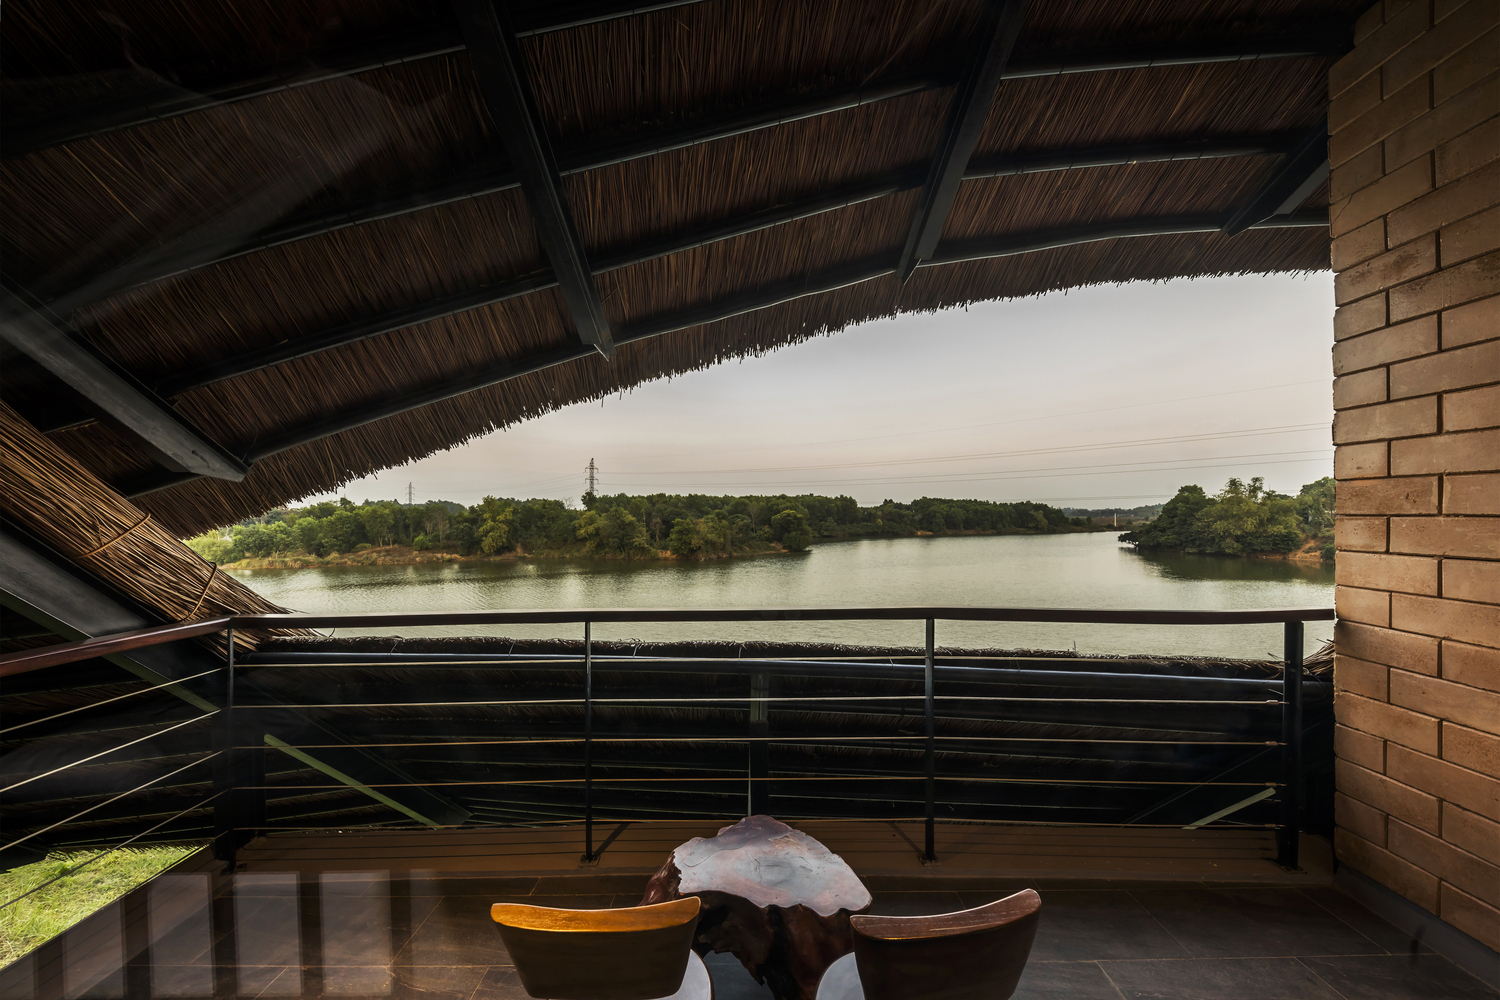 Ngôi nhà view nhìn ra hồ nước tuyệt đẹp, kiến trúc gợi hình ảnh làng quê Việt tại ngoại thành Hà Nội - Ảnh 18